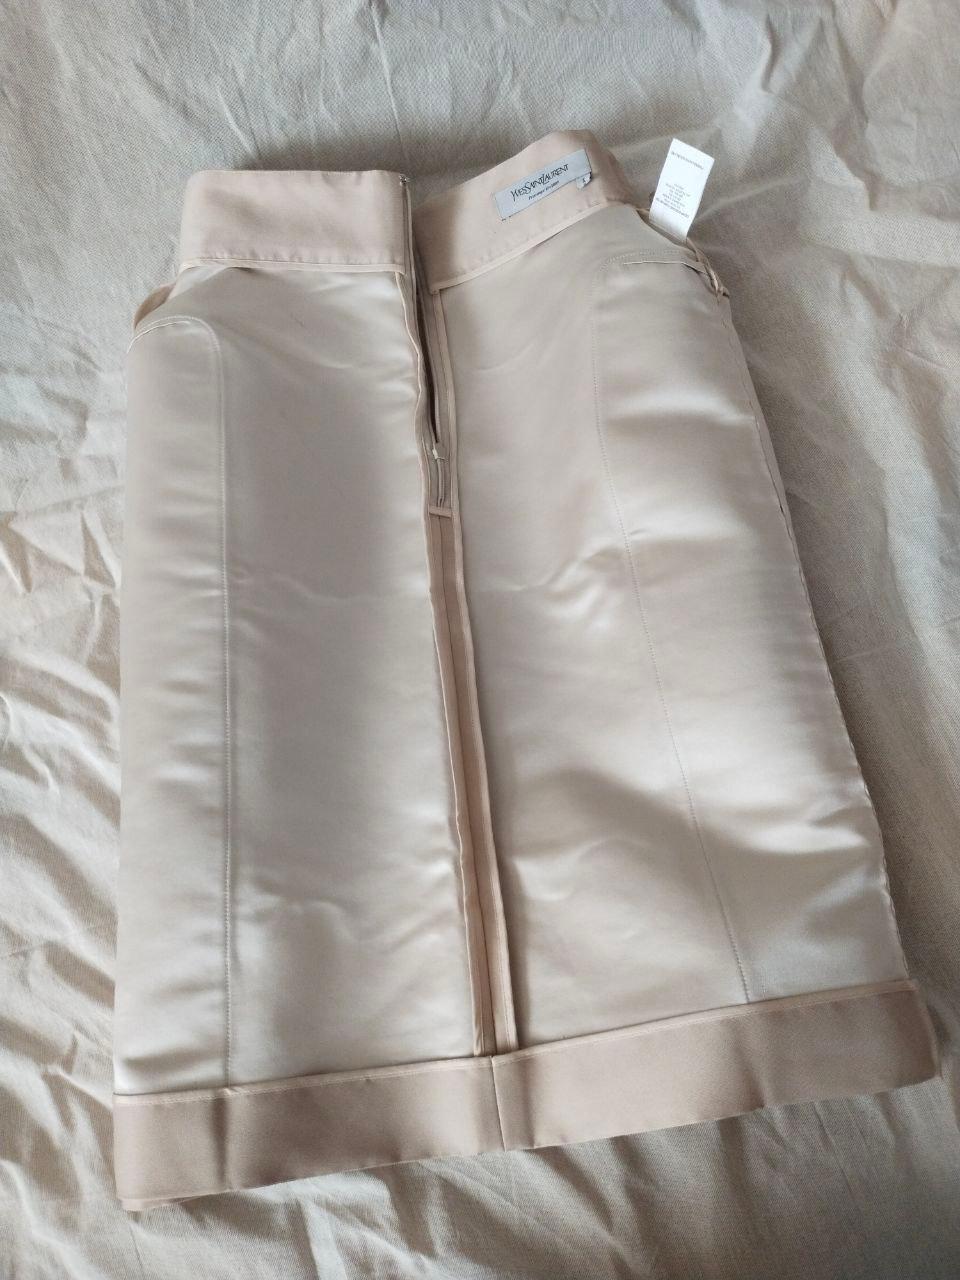 Yves Saint Laurent & Stefano Pilati 2009 YSL Skirt (Spring 2009 Ready-to-Wear) For Sale 7